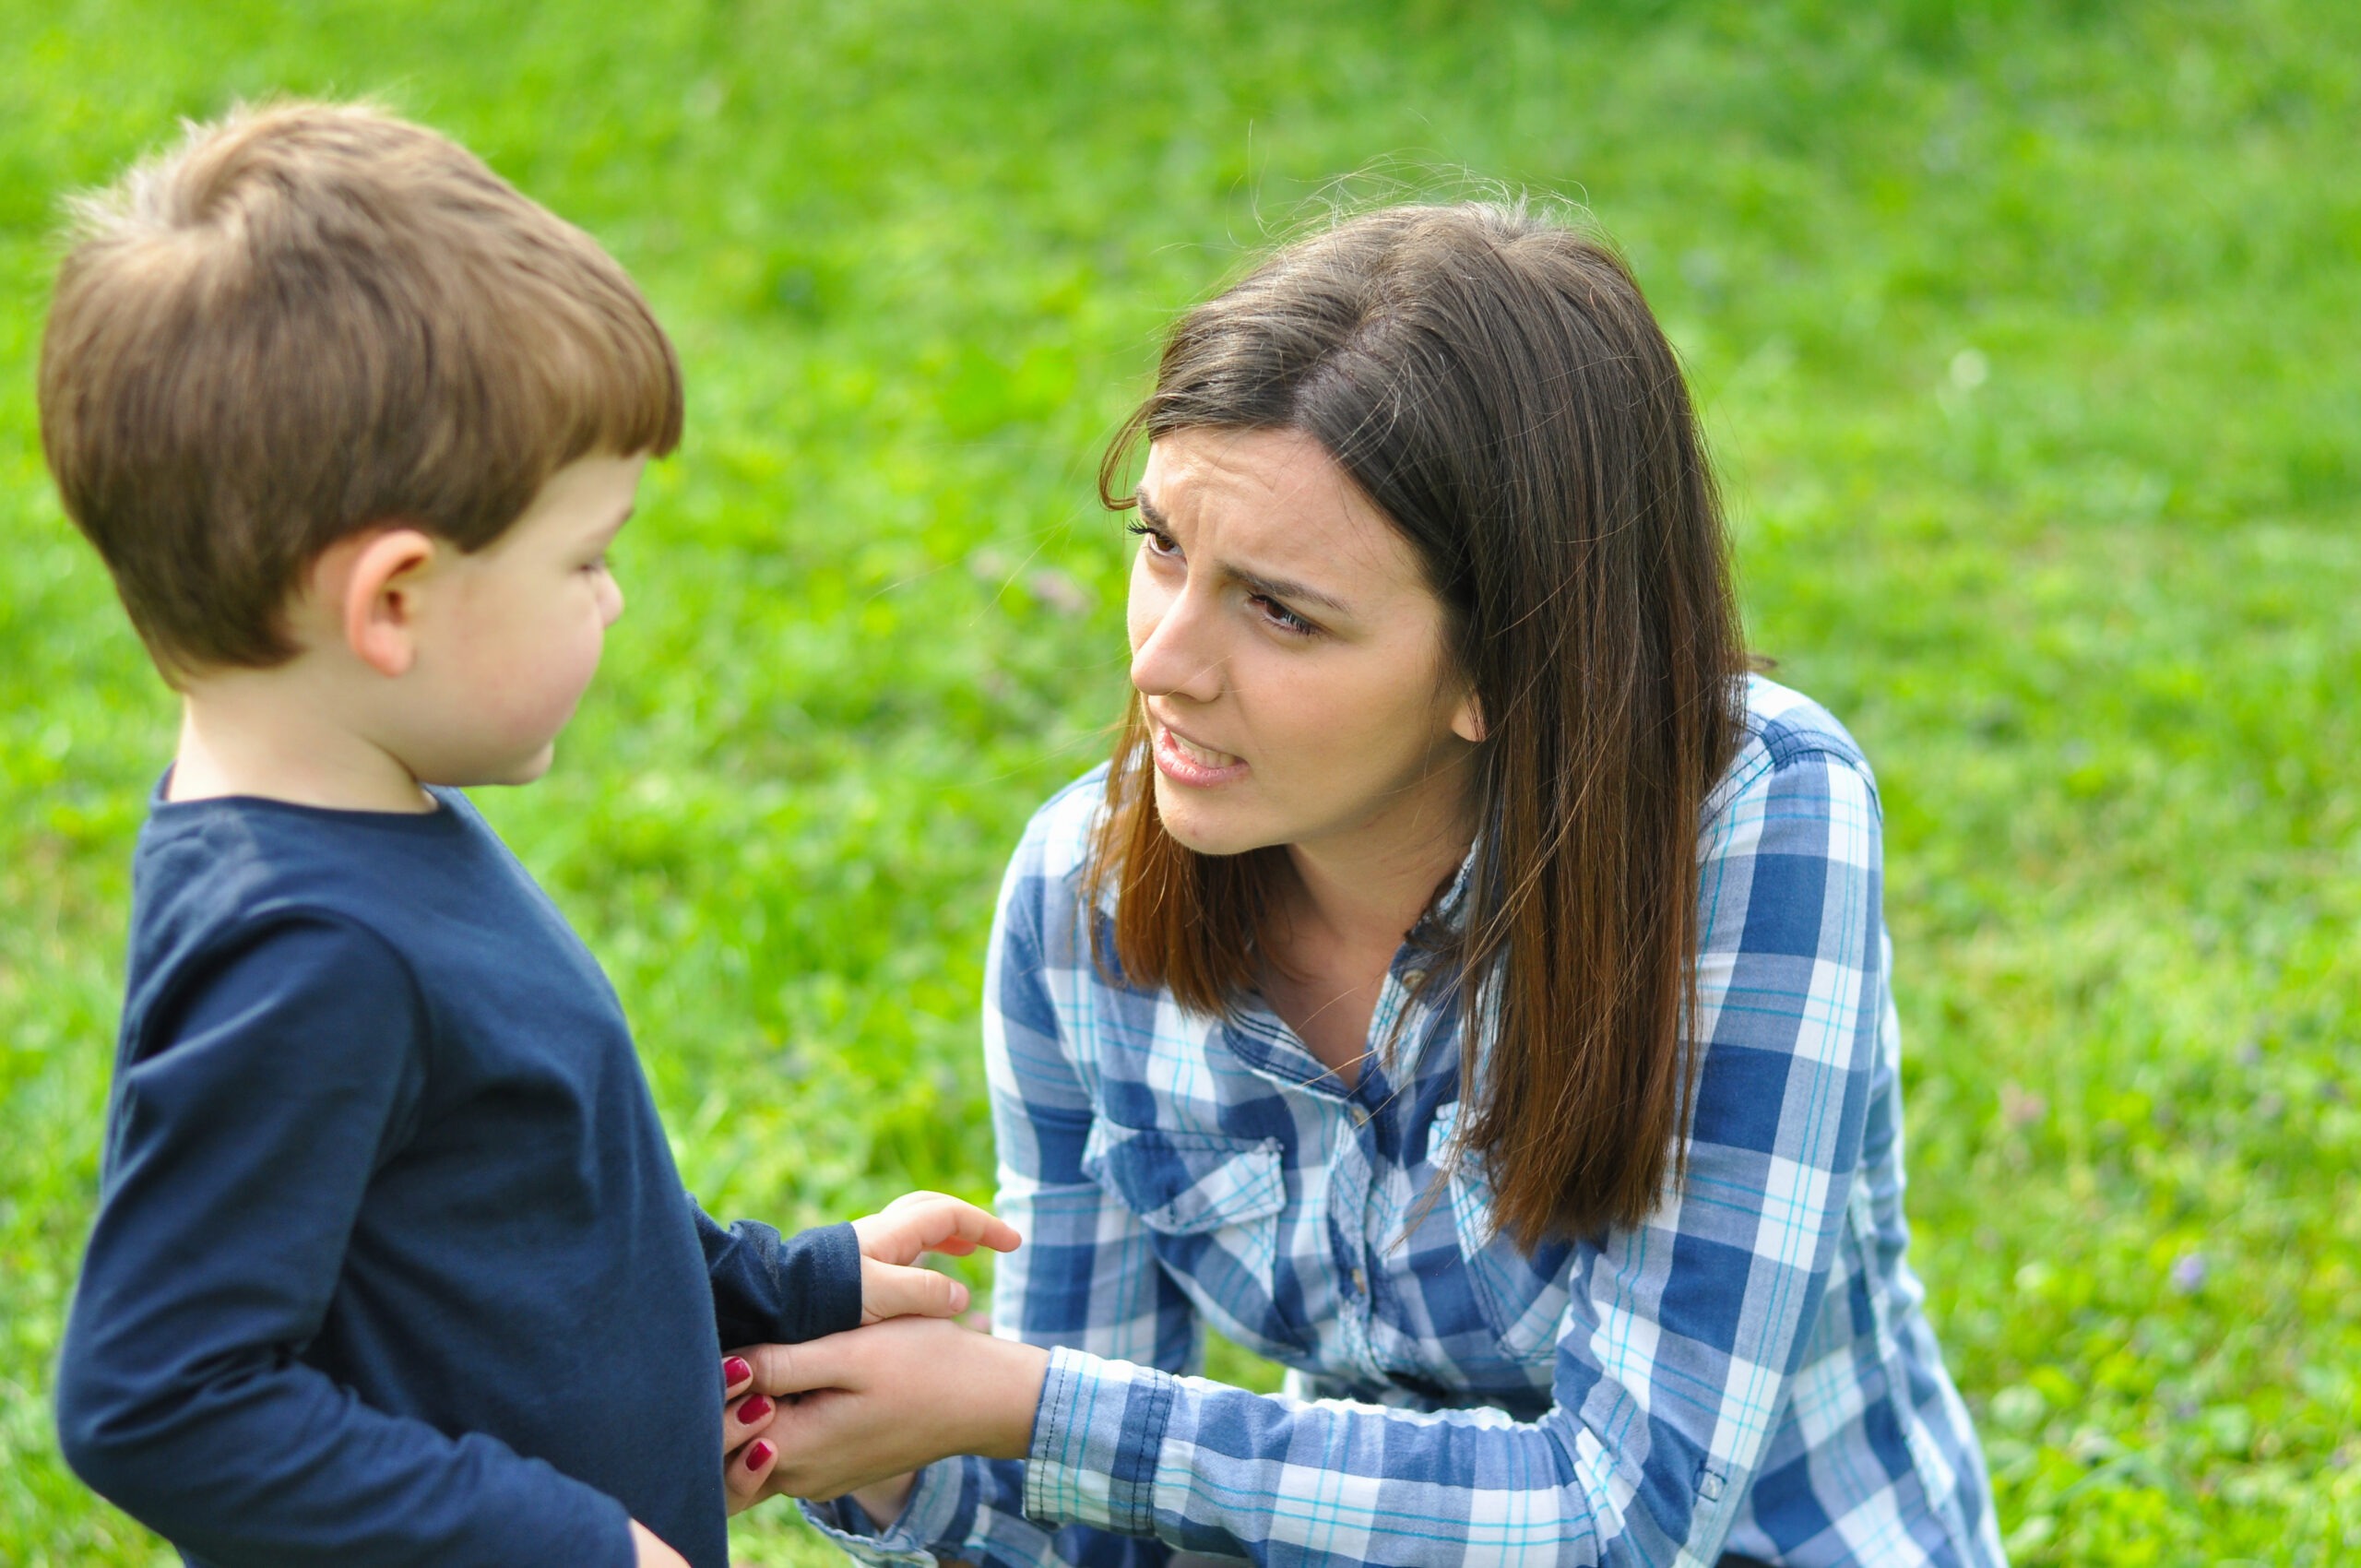 A woman speaking to a little boy | Source: Shutterstock